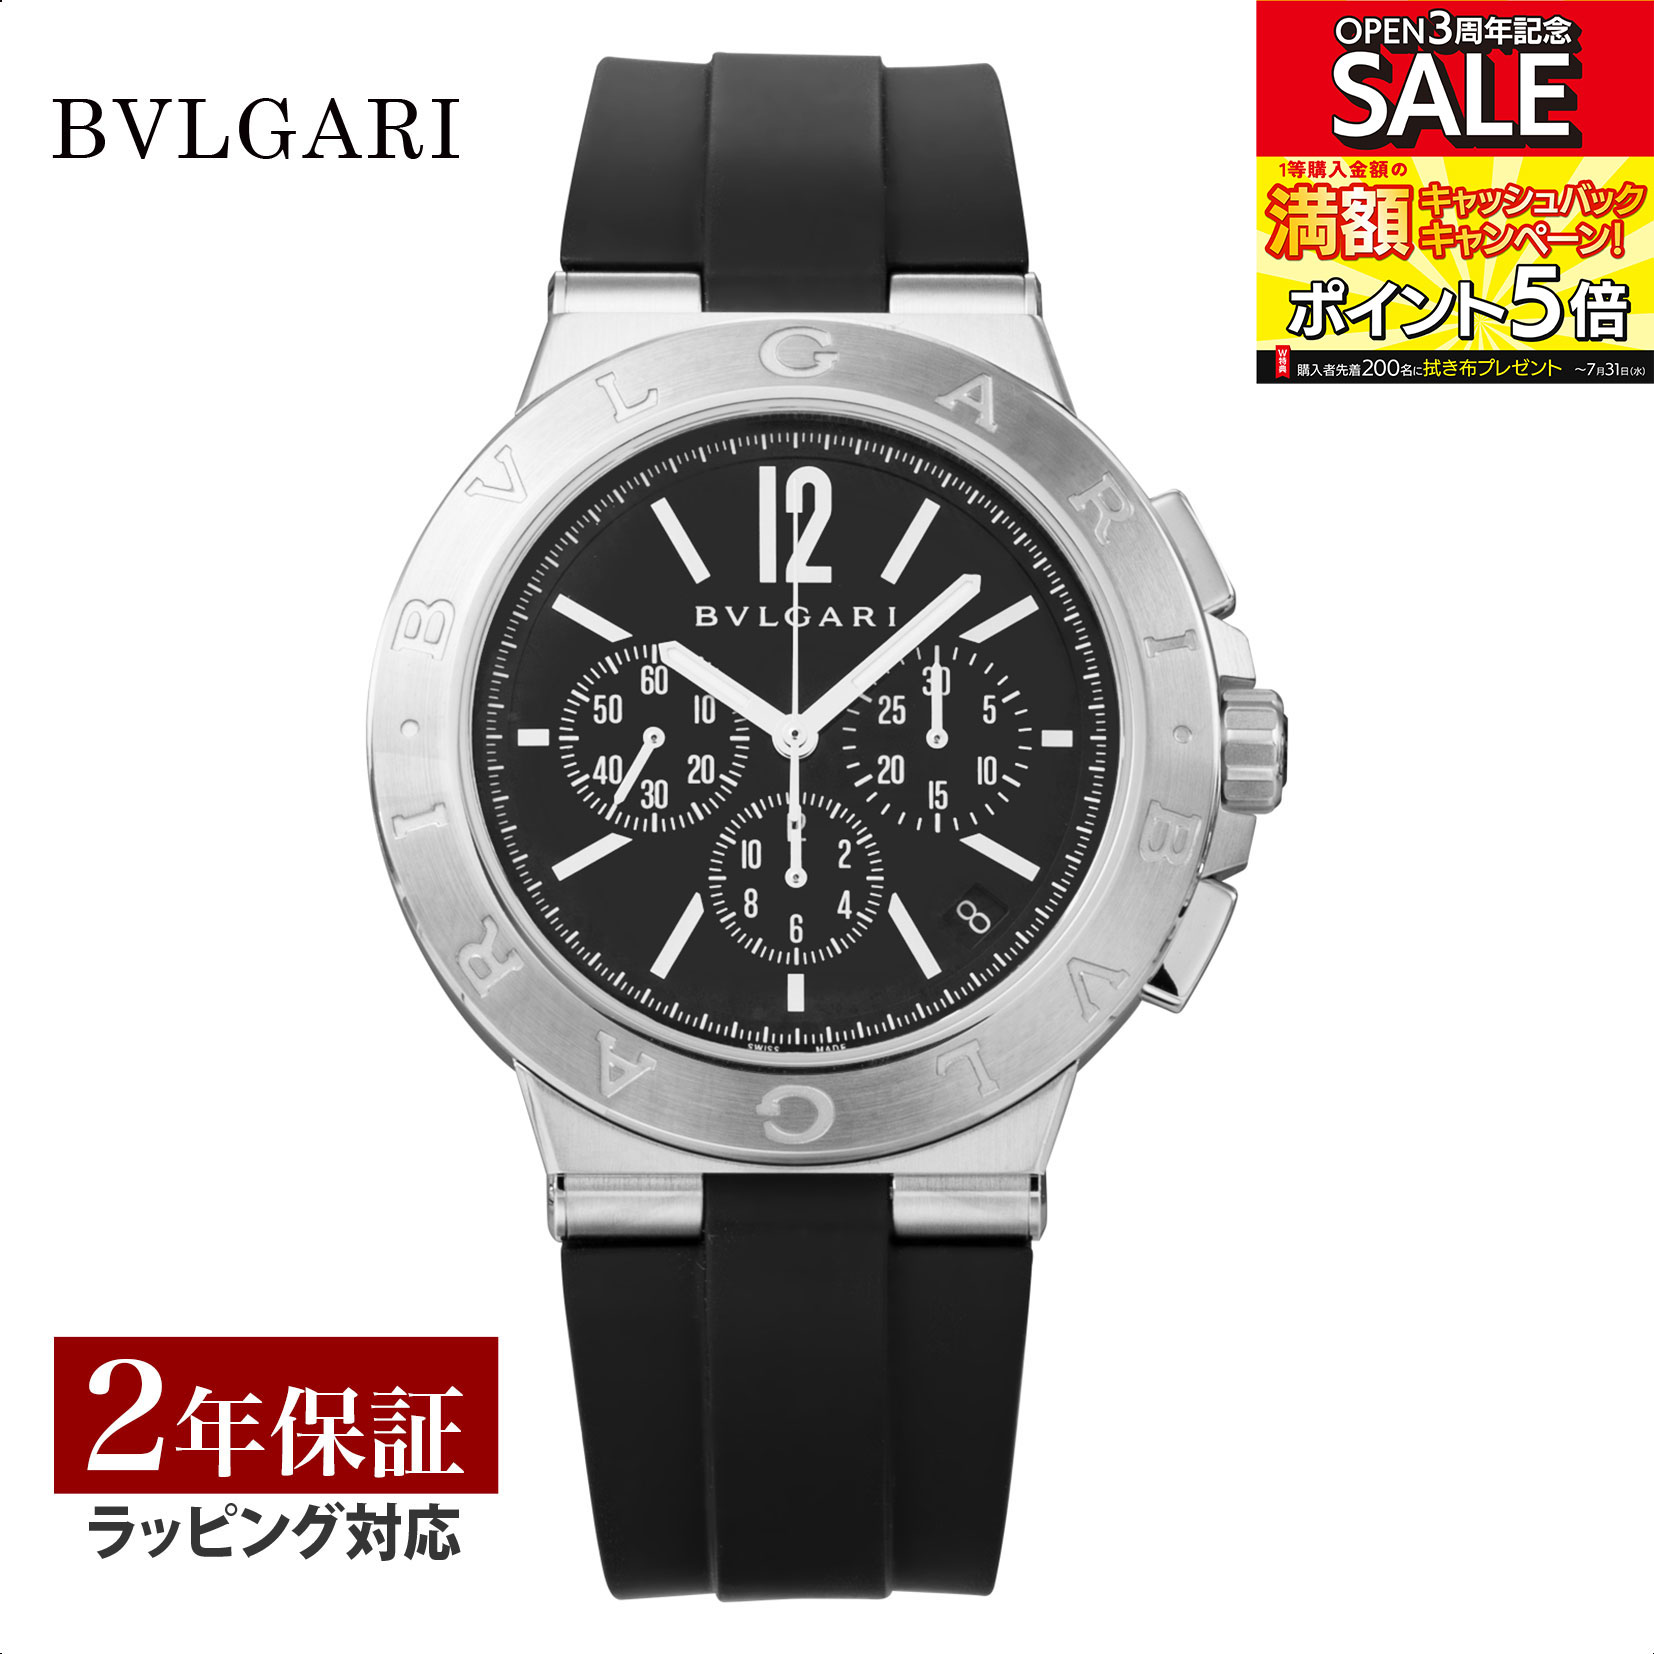 【レビューでブルガリランチ券】ブルガリ BVLGARI メンズ 時計 Diagono ディアゴノ 自動巻 ブラック DG41BSVDCH 時計 腕時計 高級腕時計 ブランド 【ローン金利無料】